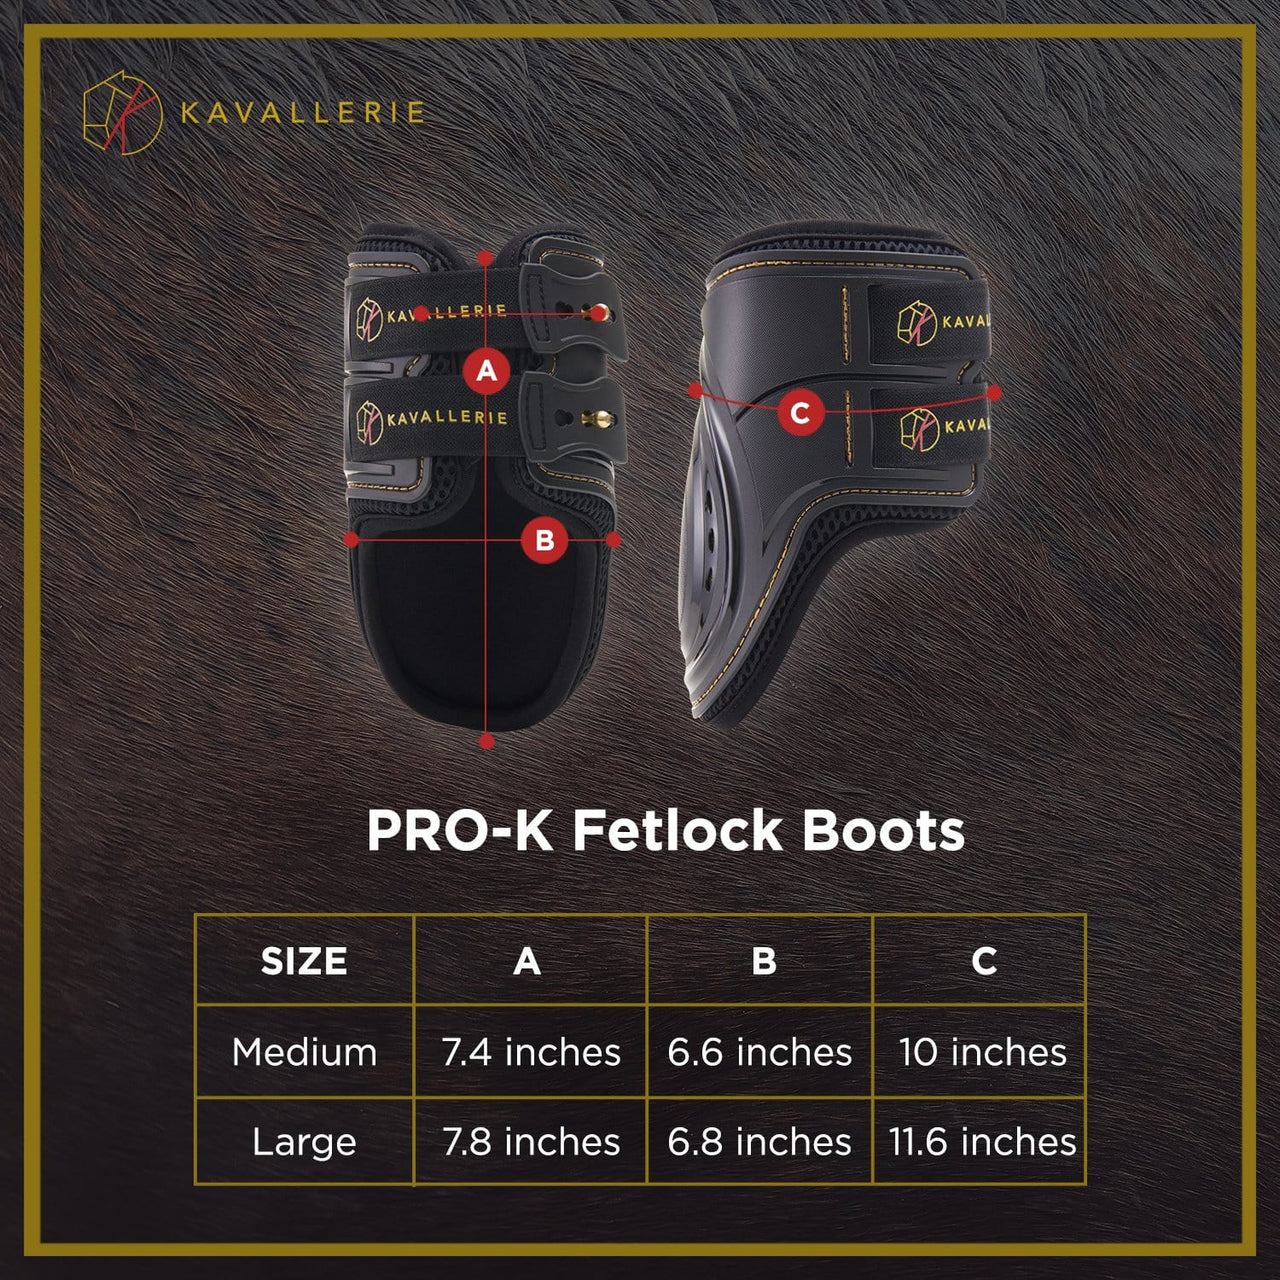 Pro-K Fetlock Boots - Kavallerie